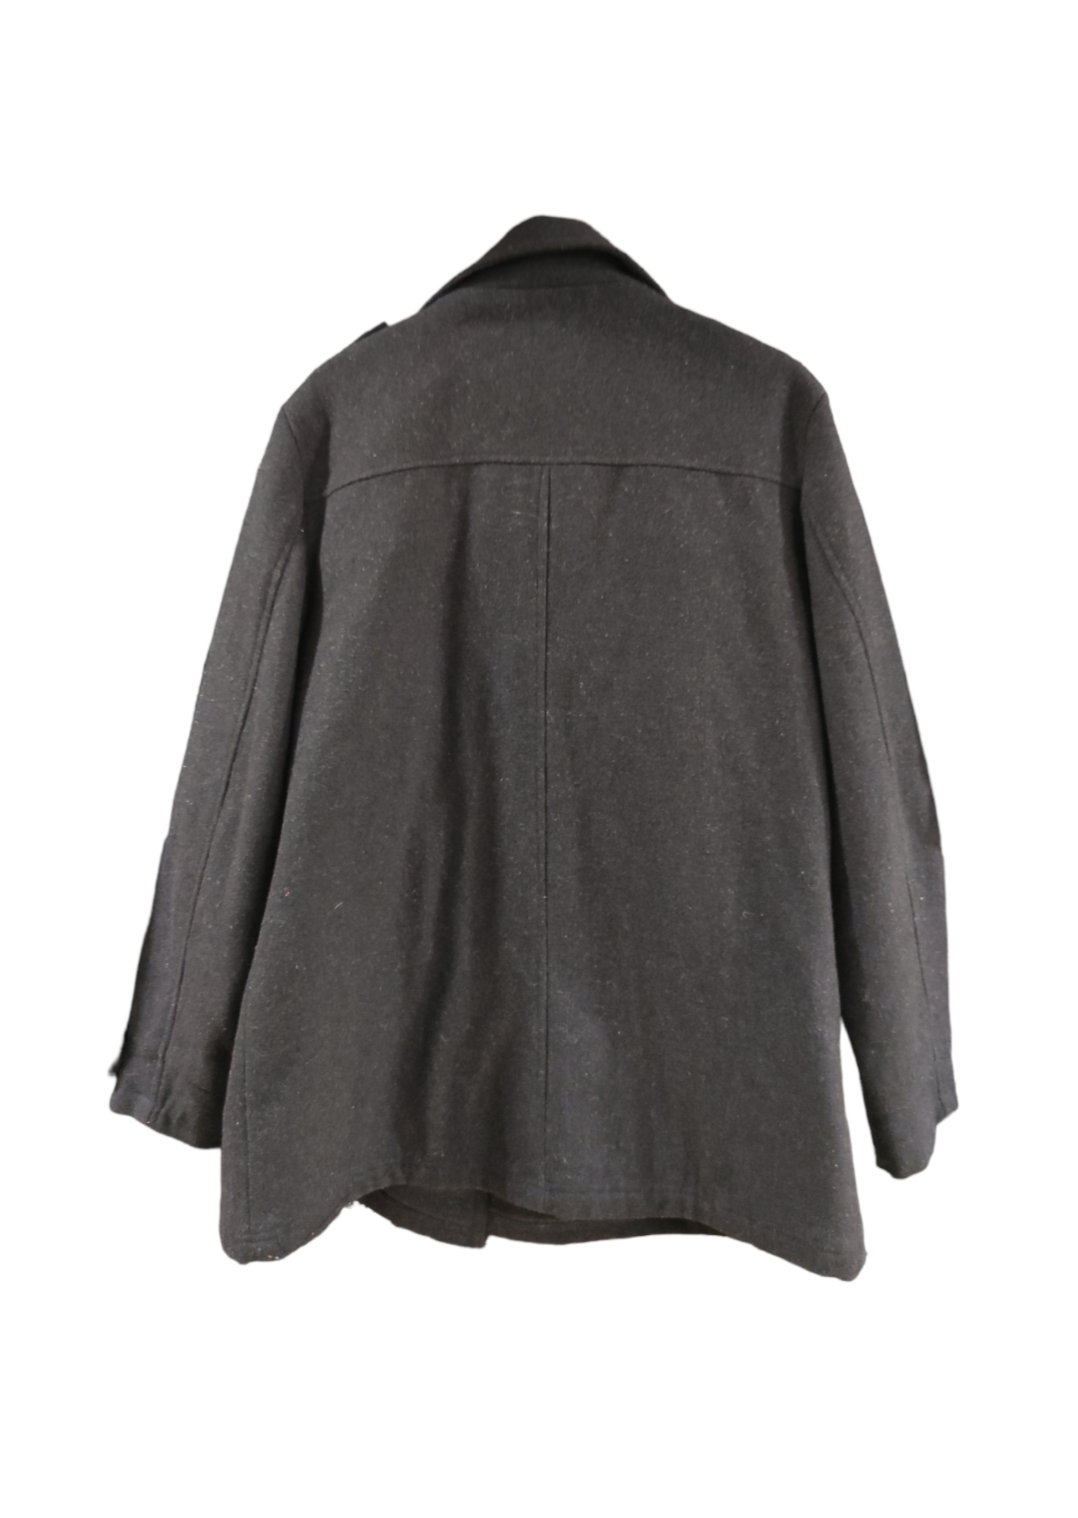 Ανδρικό Παλτό APPEALING PRODUCTS σε Μαύρο χρώμα (Large)